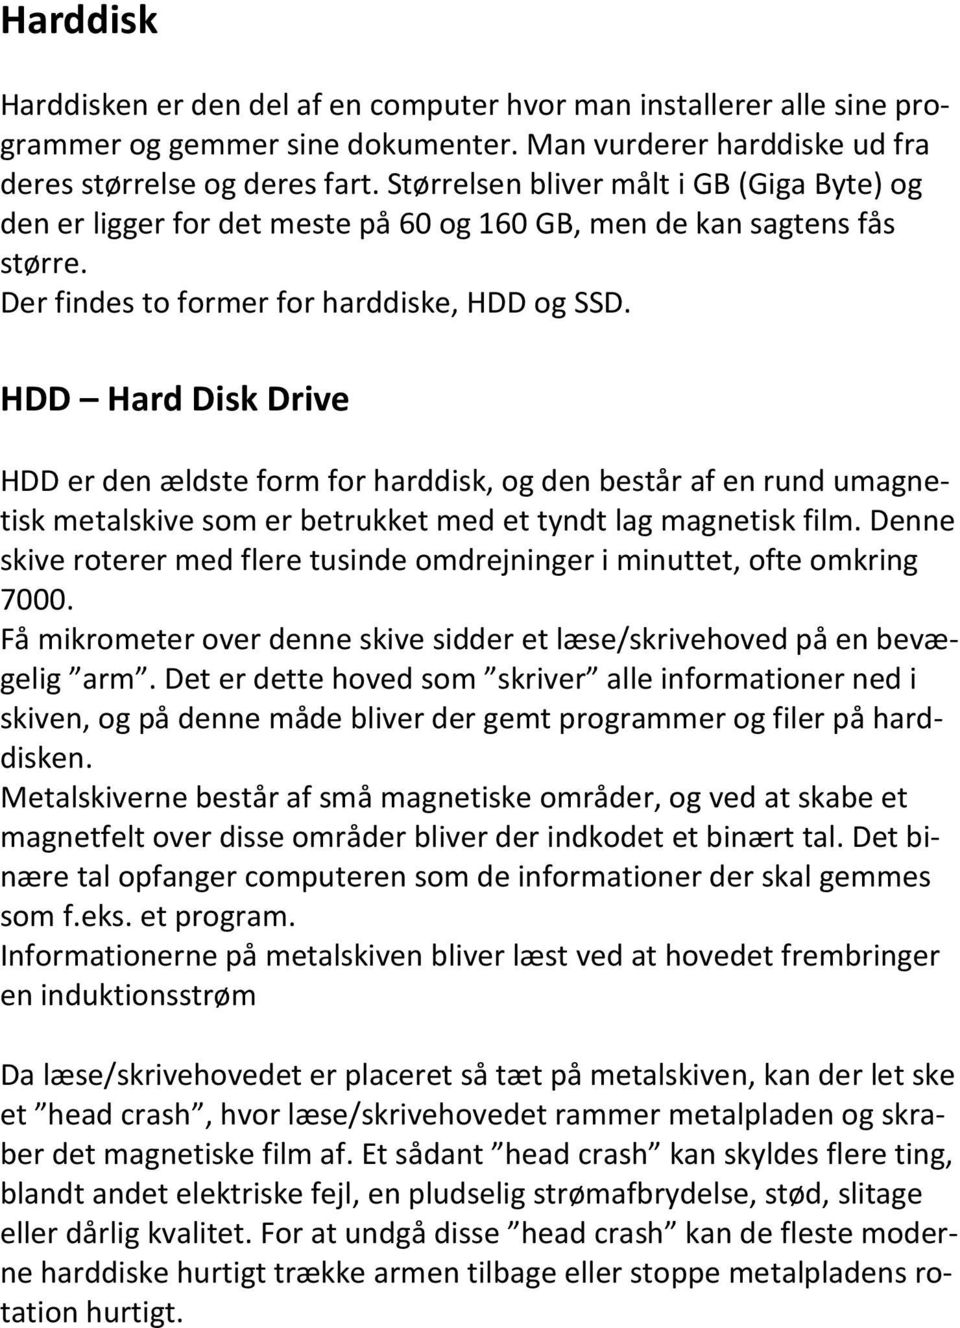 HDD Hard Disk Drive HDD er den ældste form for harddisk, og den består af en rund umagnetisk metalskive som er betrukket med et tyndt lag magnetisk film.